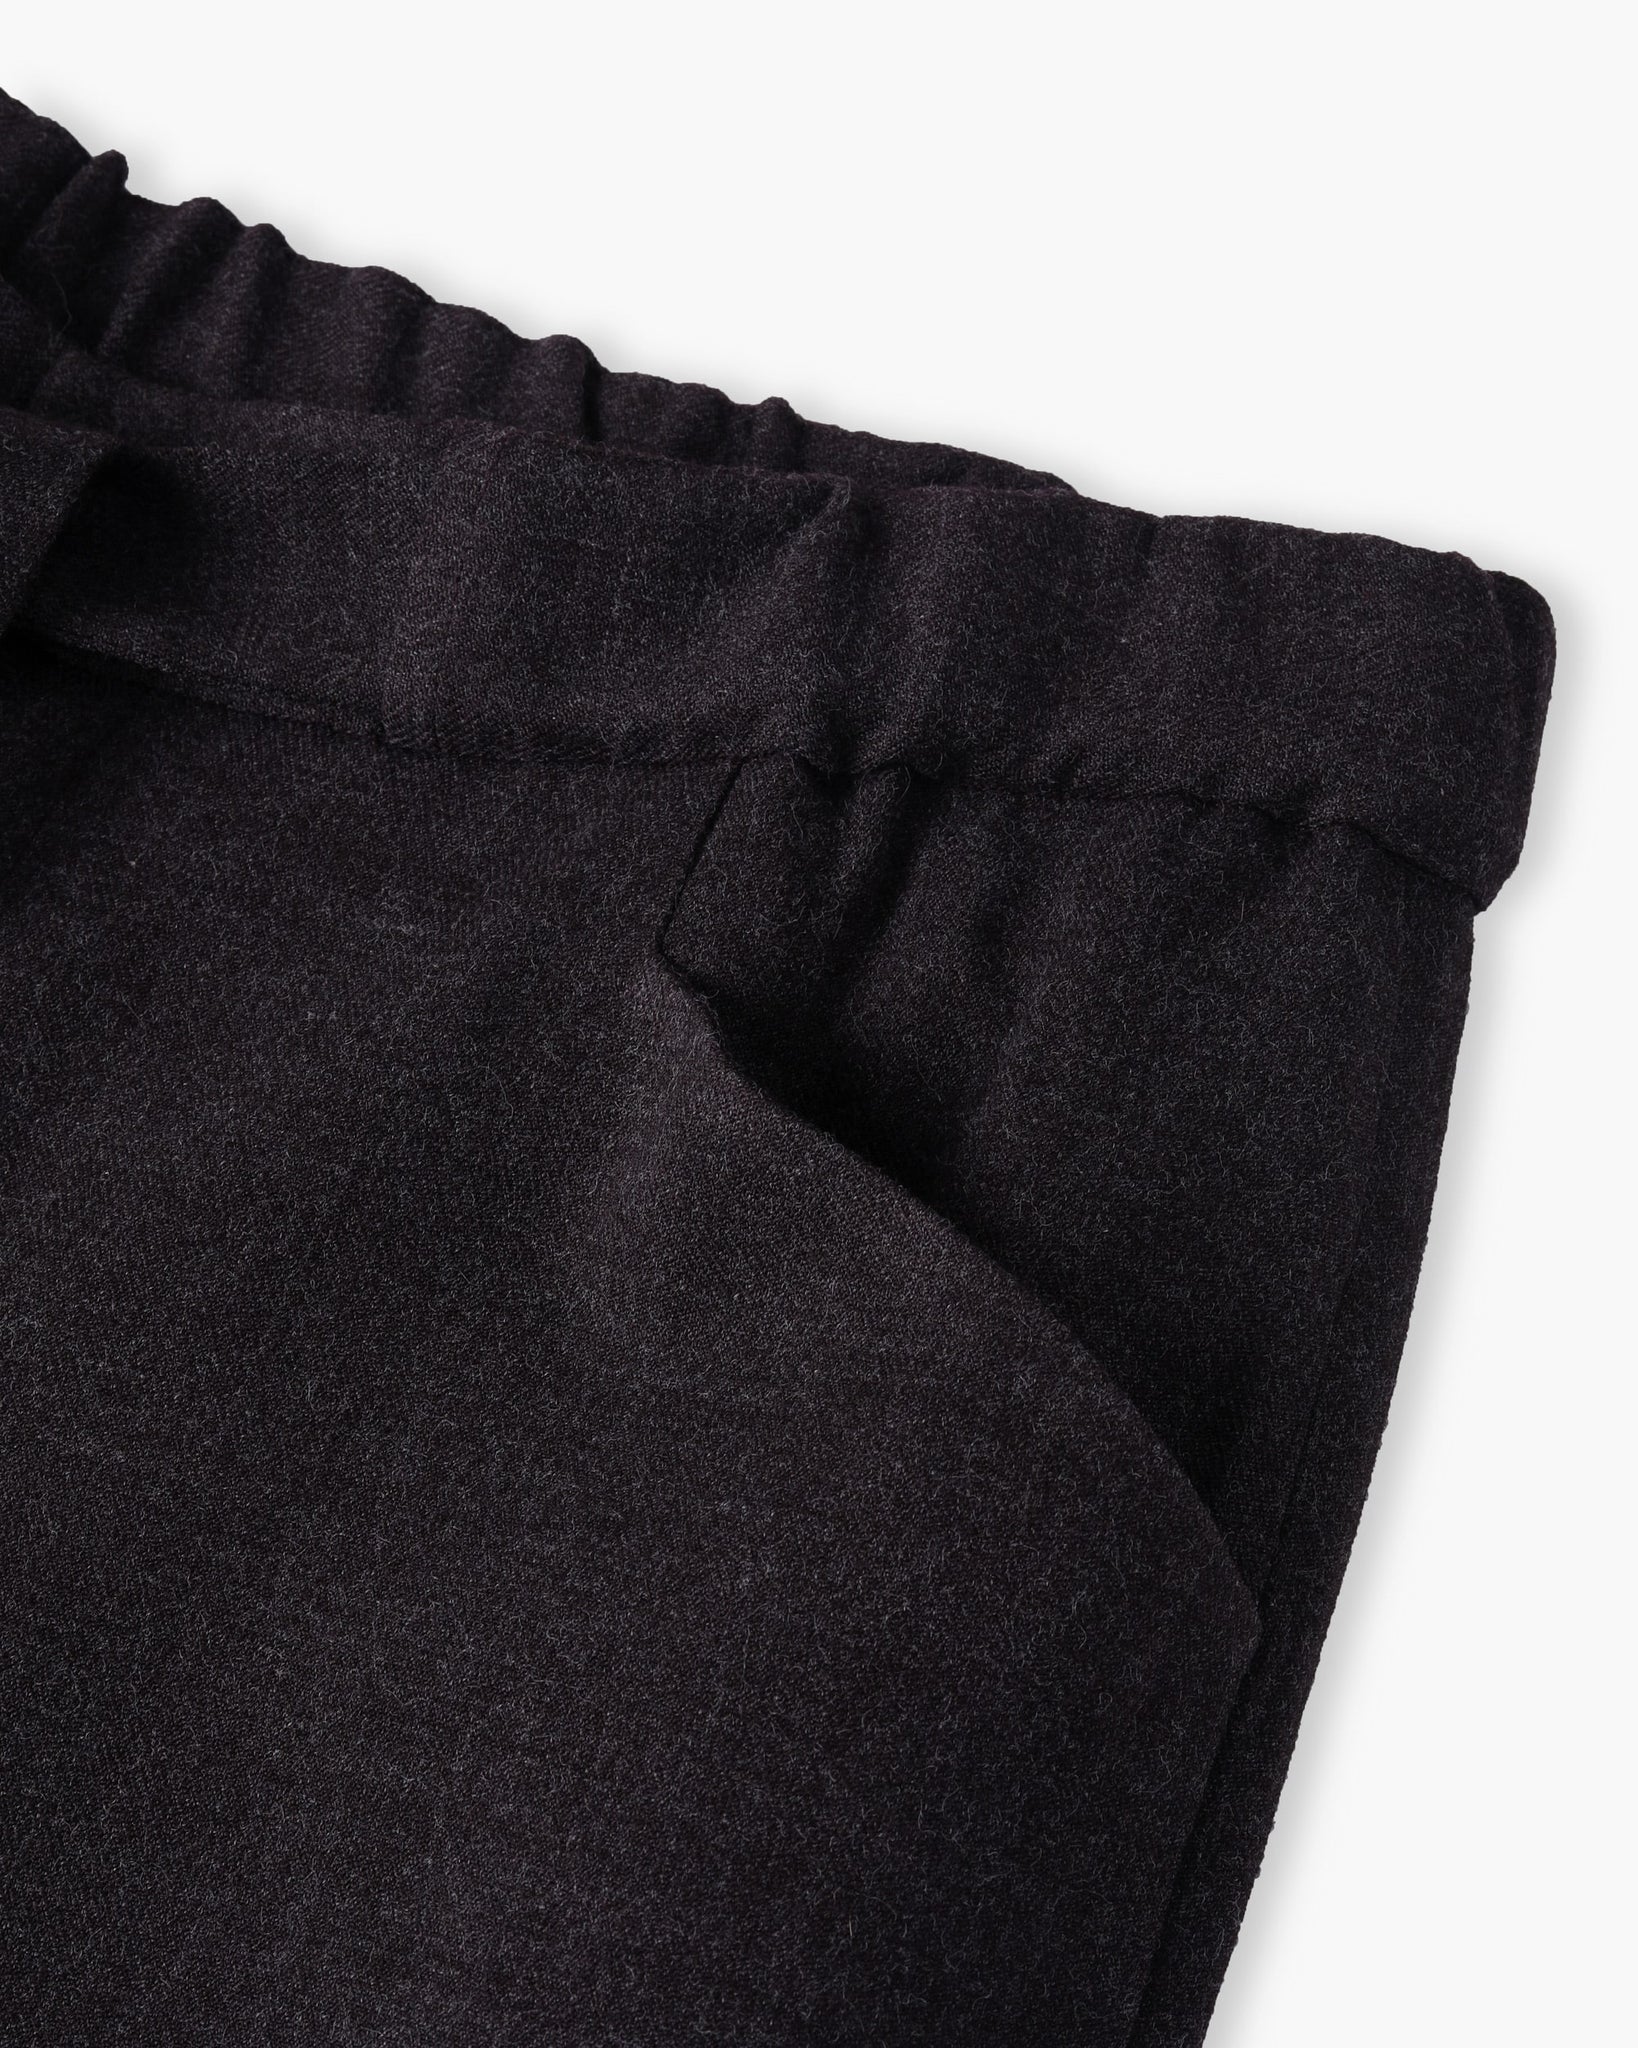 ROSEN Tsering Asymmetrical Suit Trousers in Wool Gauze